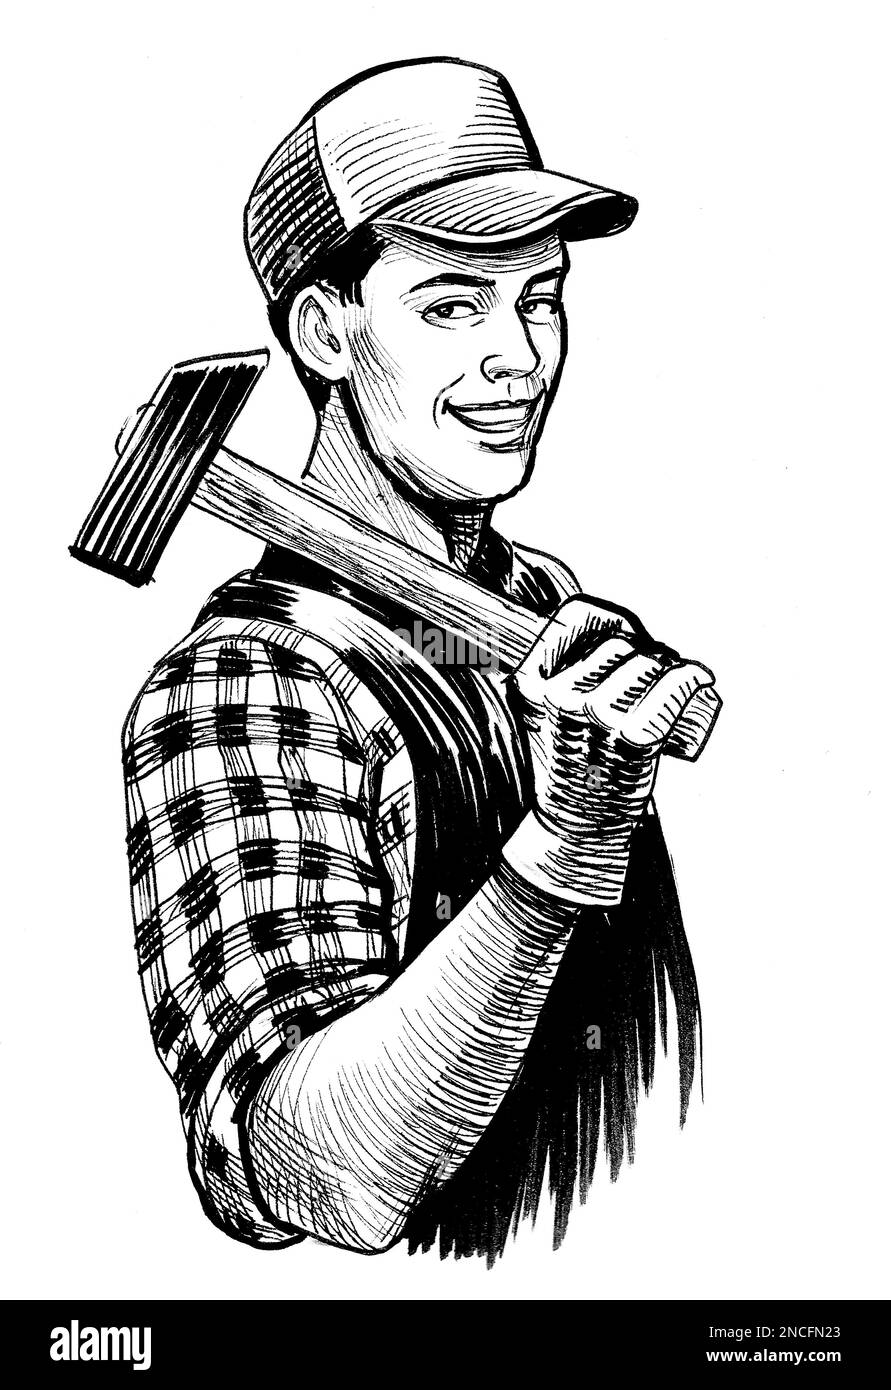 Un travailleur heureux avec un marteau. Dessin noir et blanc Banque D'Images